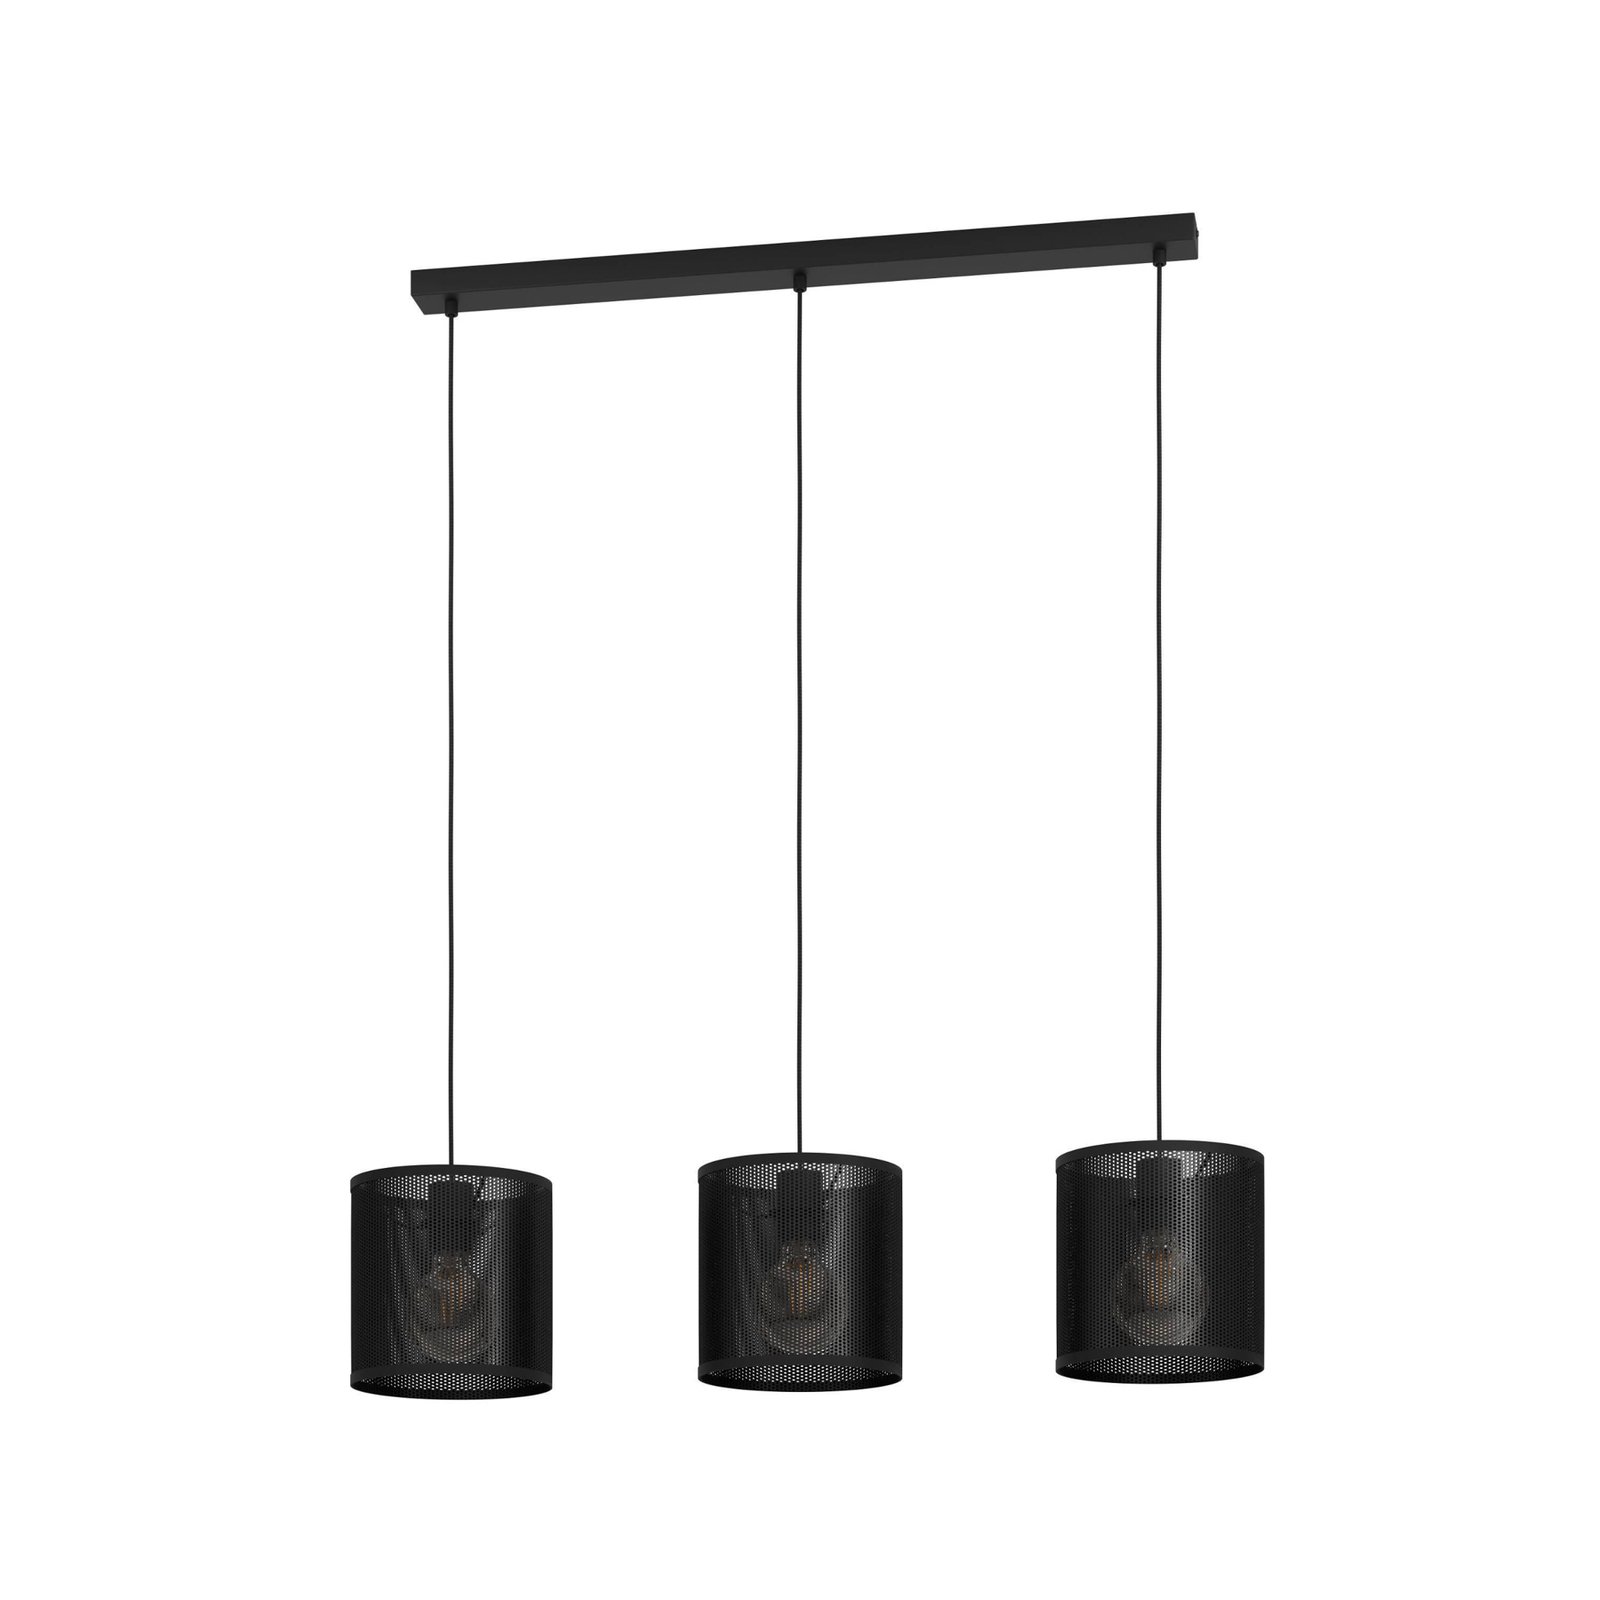 Manby pendant light, length 90 cm, black, 3-bulb, steel